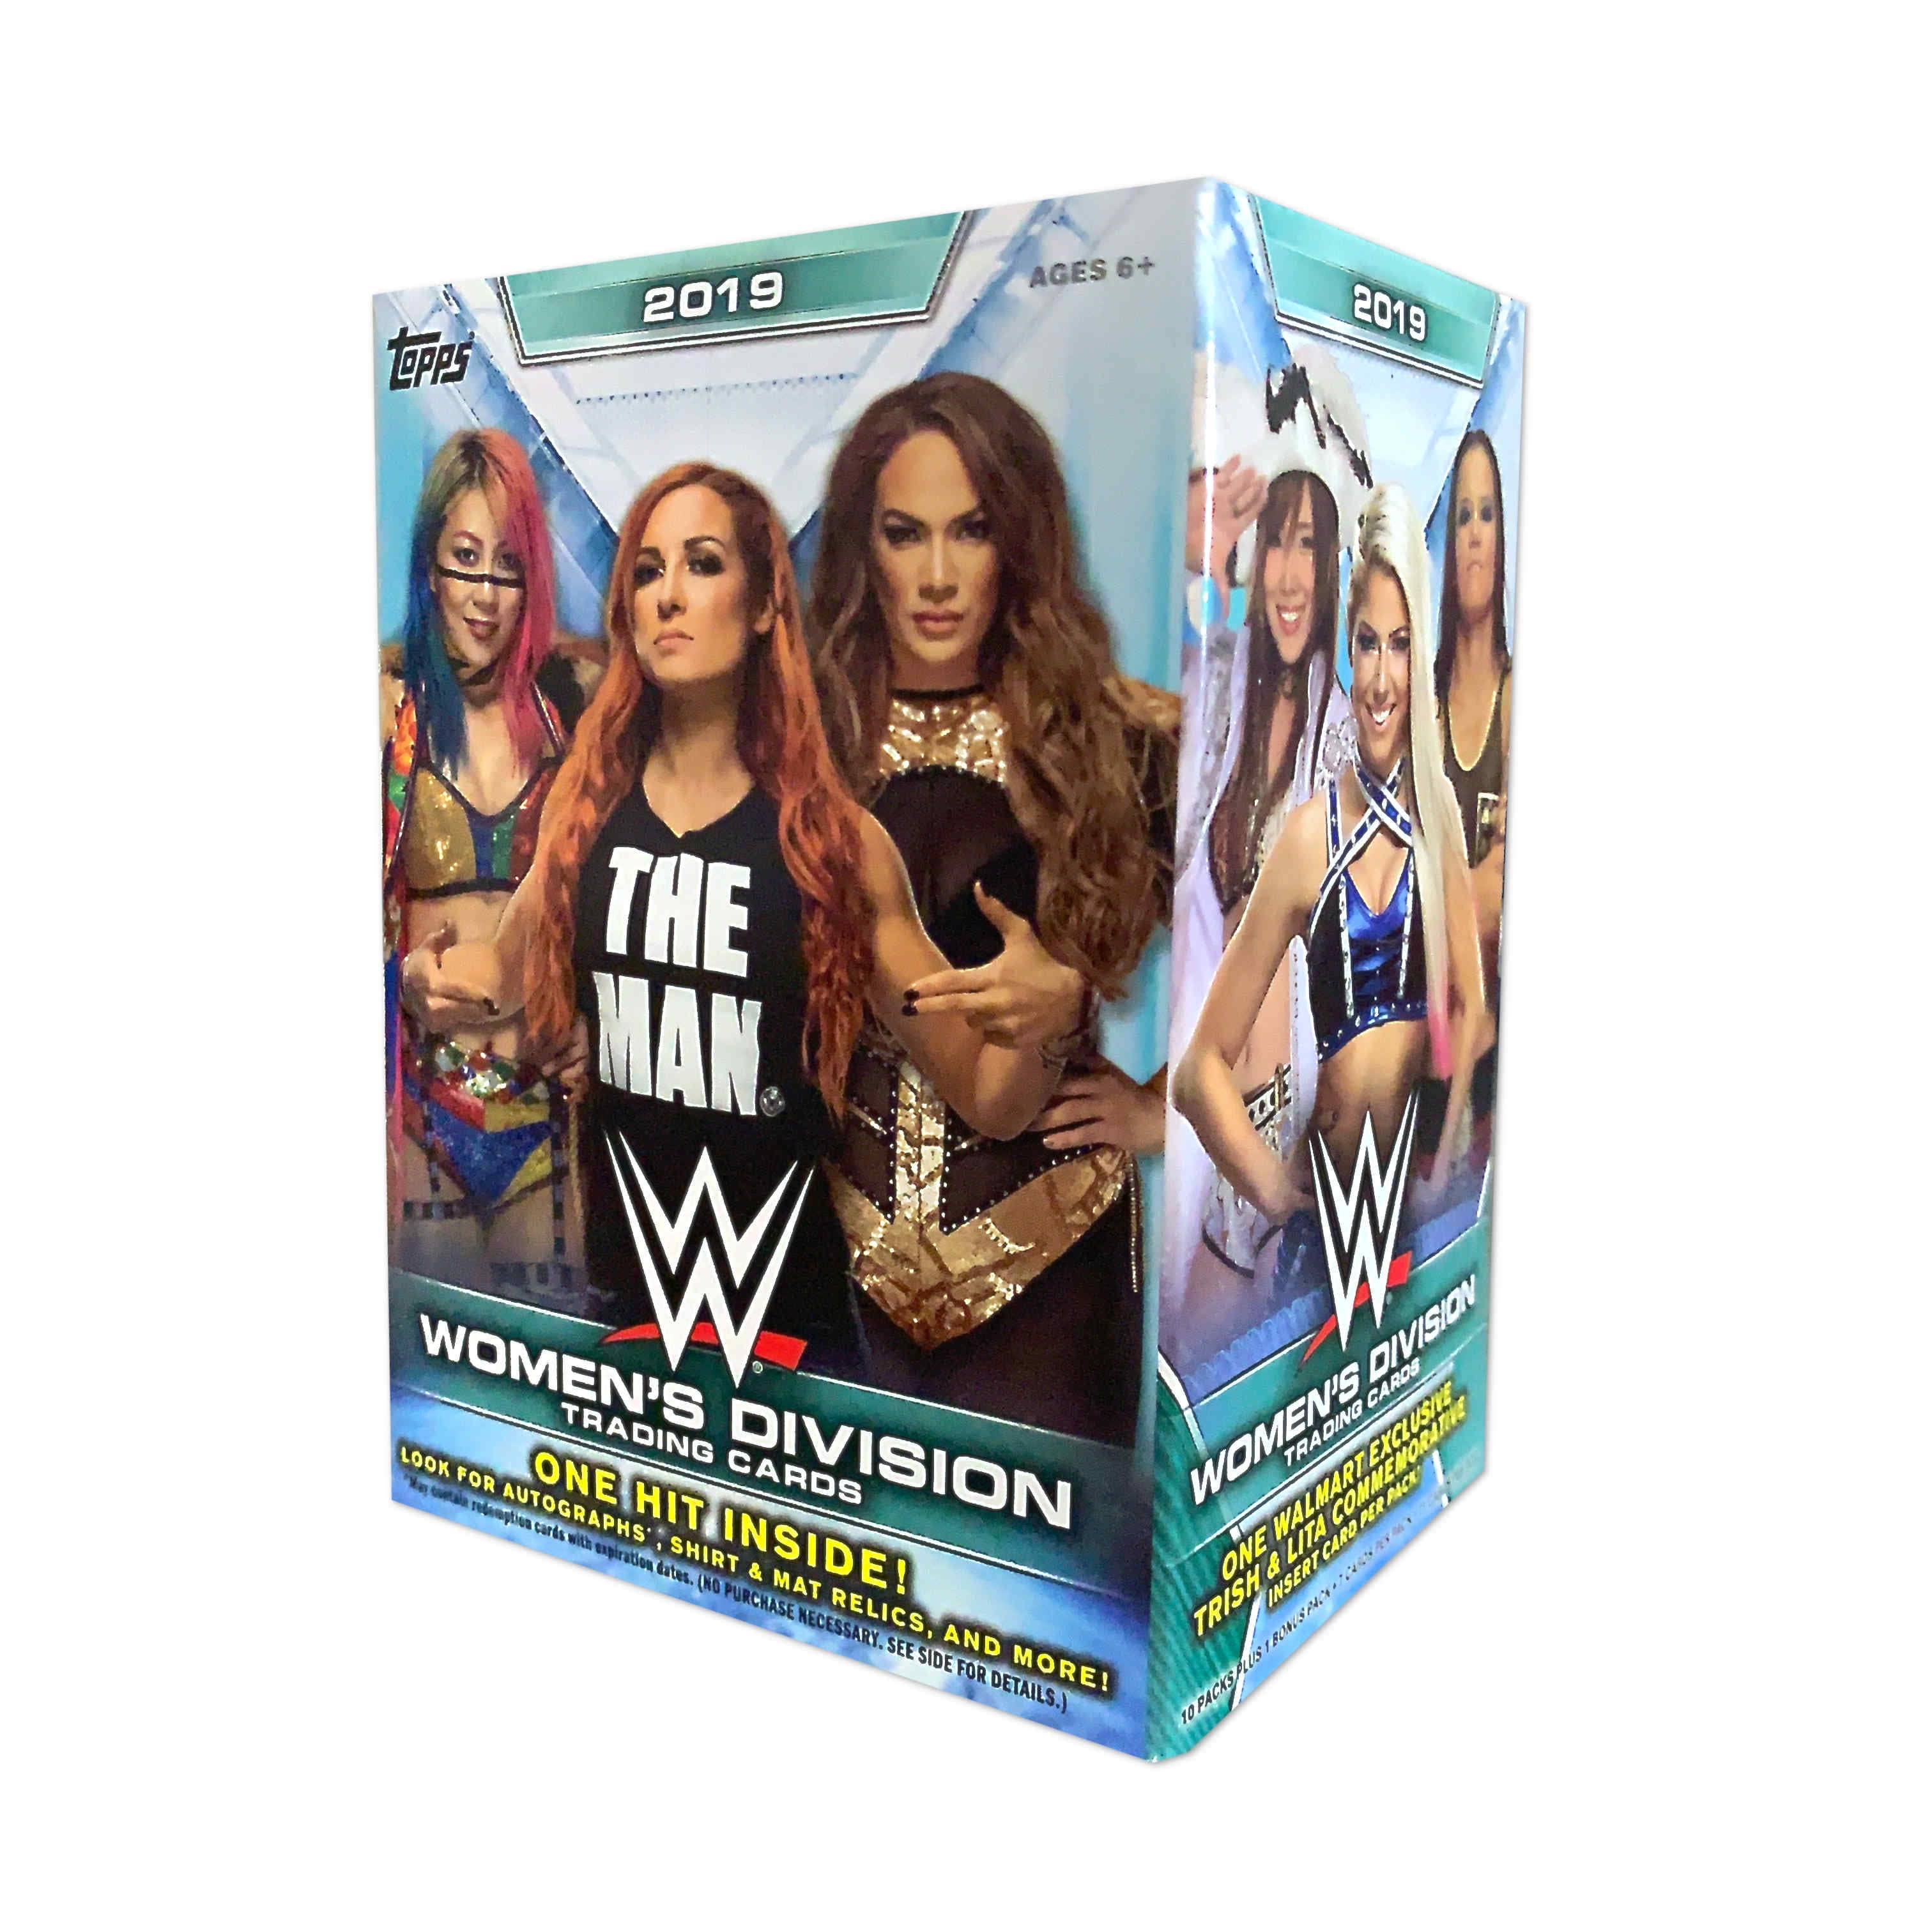 2019 Topps WWE Women's Division sealed blaster box 10 packs 7 cards 1 card bonus 